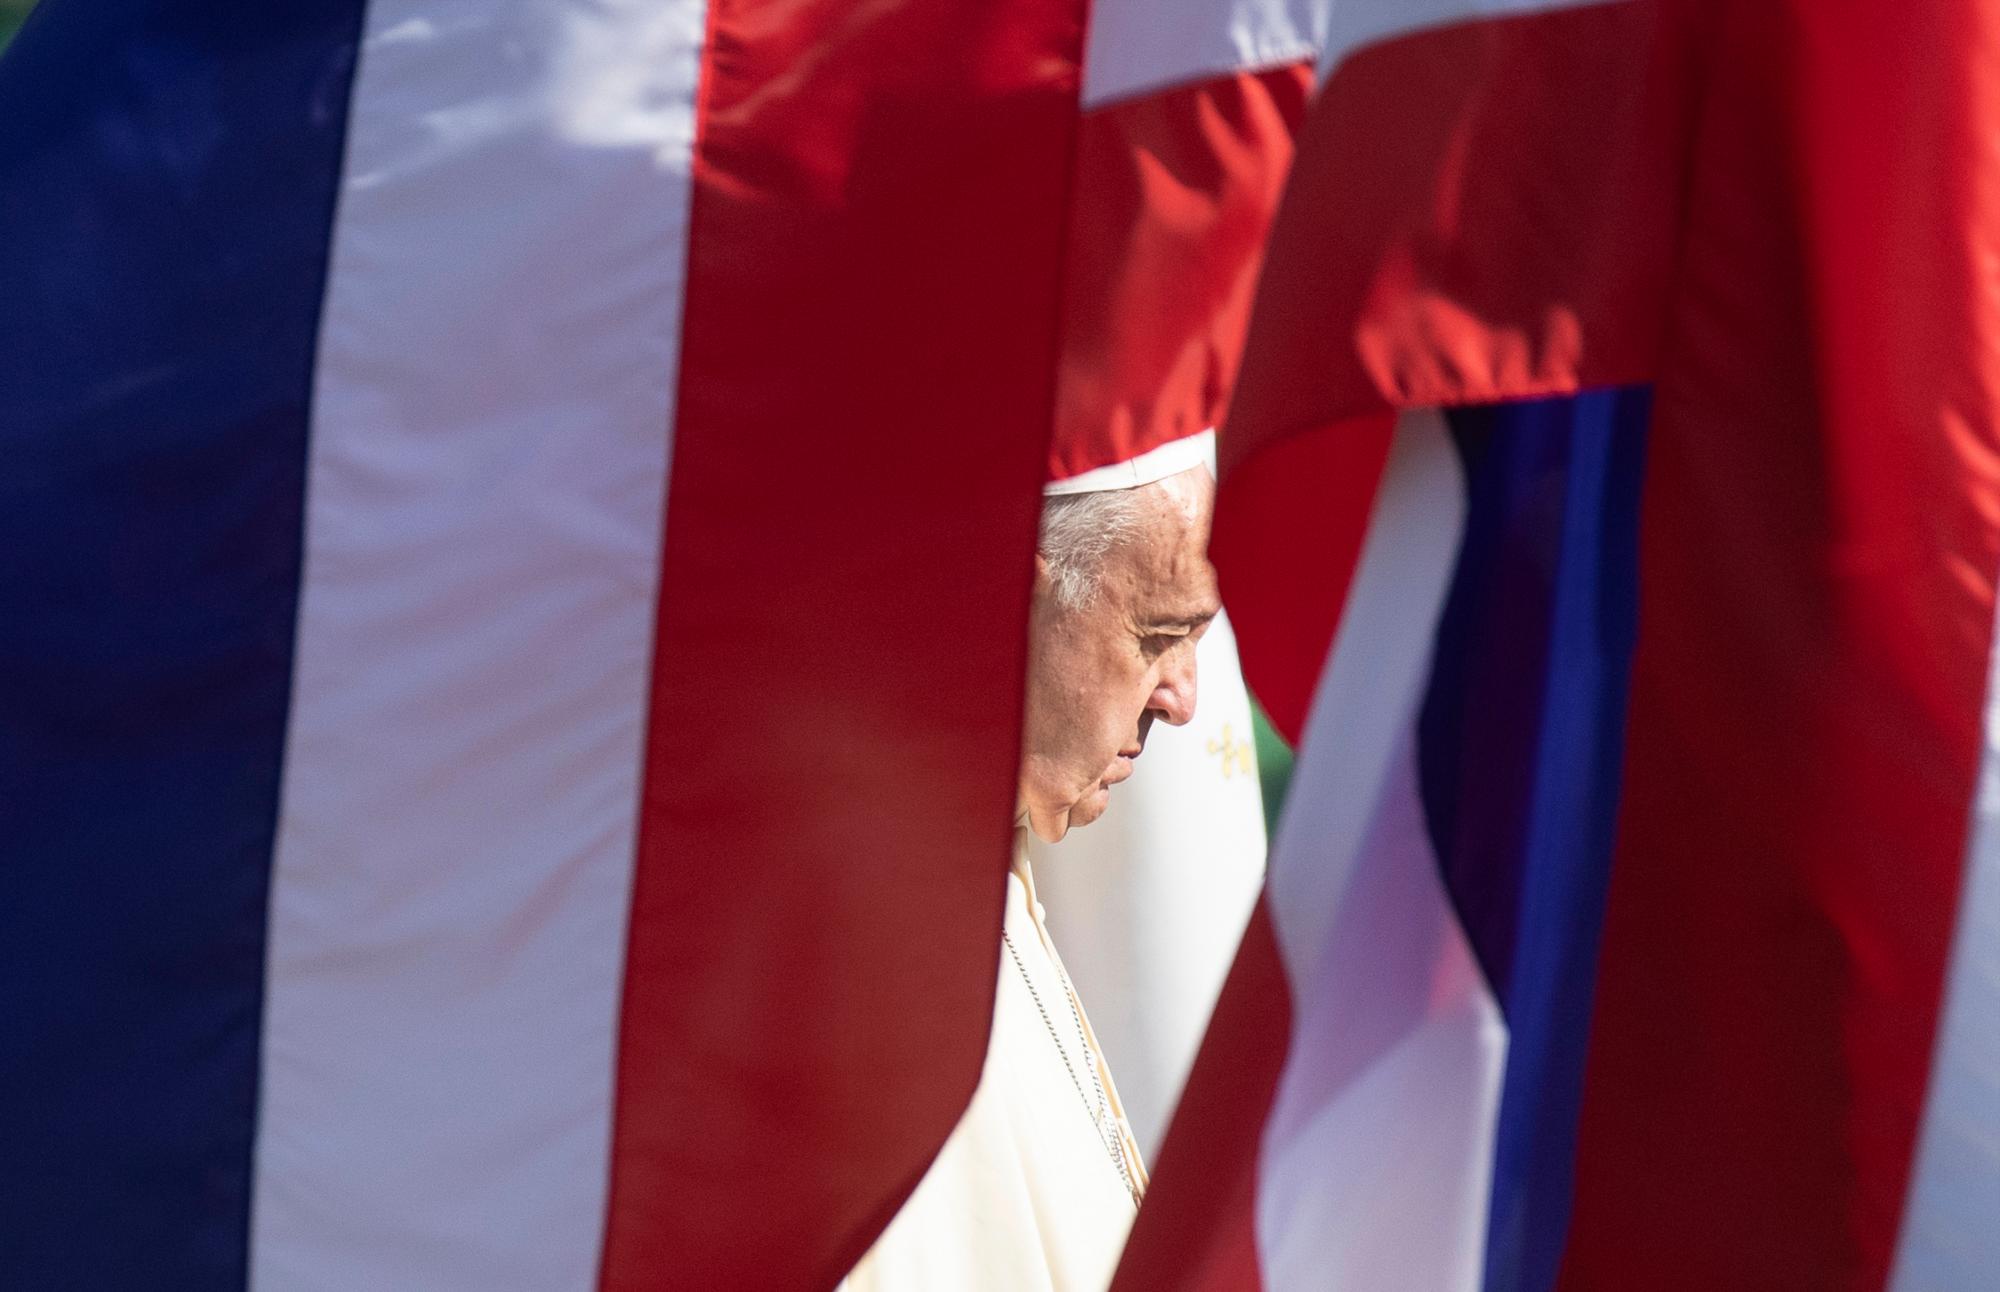 El Papa Francisco escucha los himnos nacionales durante una ceremonia de bienvenida en la casa del gobierno en Bangkok, Tailandia, el jueves 21 de noviembre de 2019. El Papa Francisco está en una visita de cuatro días a Tailandia. 